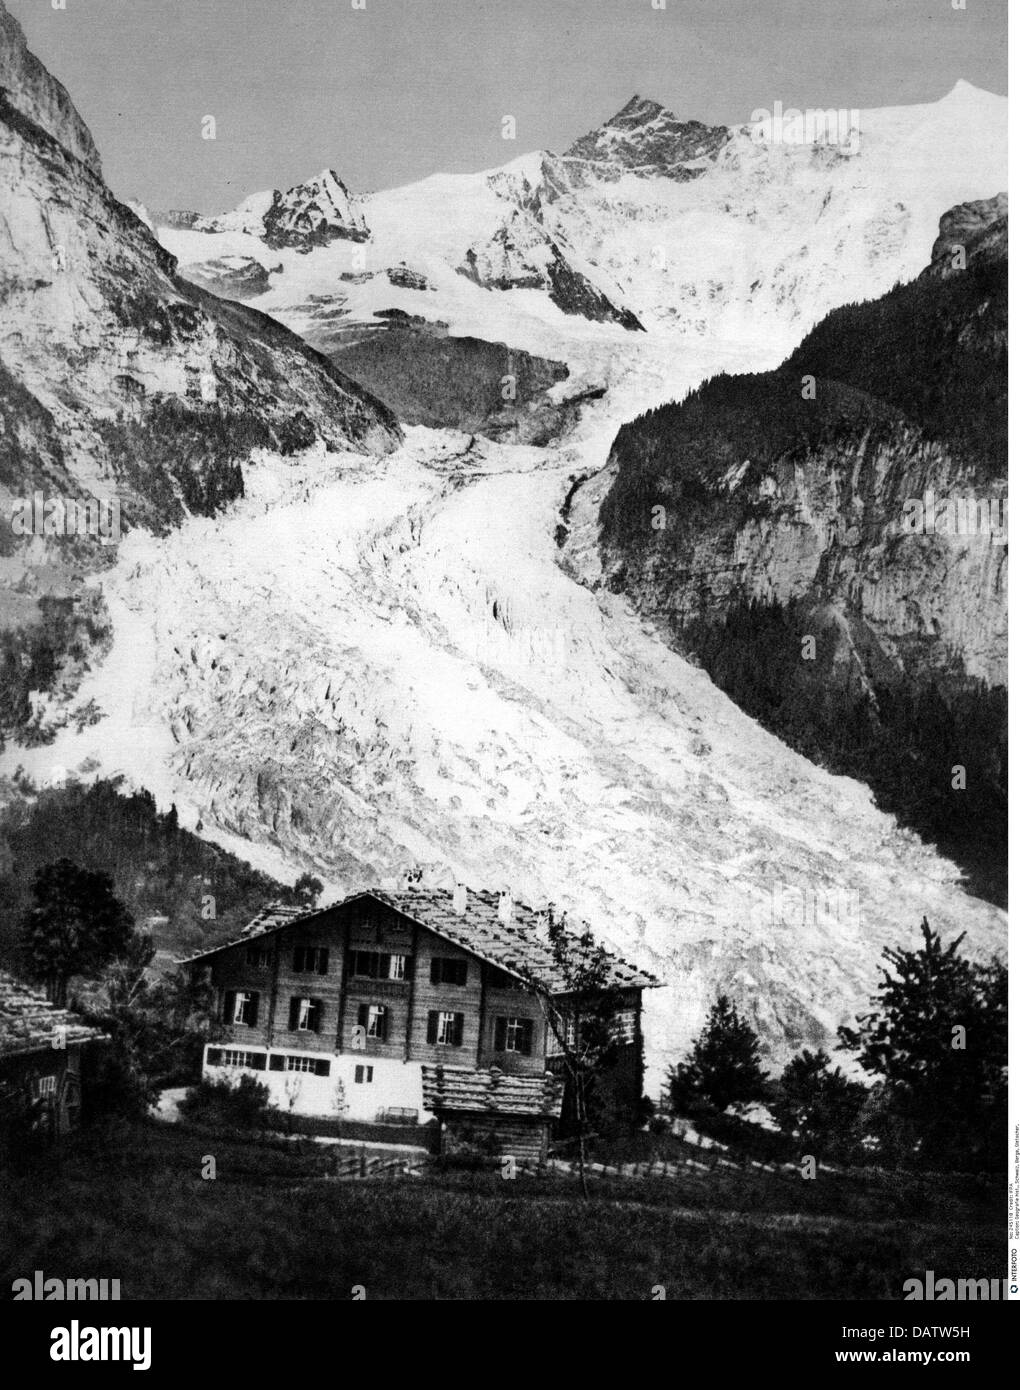 Geografia / viaggio, Svizzera, monti, ghiacciaio, al piano inferiore ghiacciaio Grindelwald, circa 1860, diritti aggiuntivi-clearences-non disponibile Foto Stock